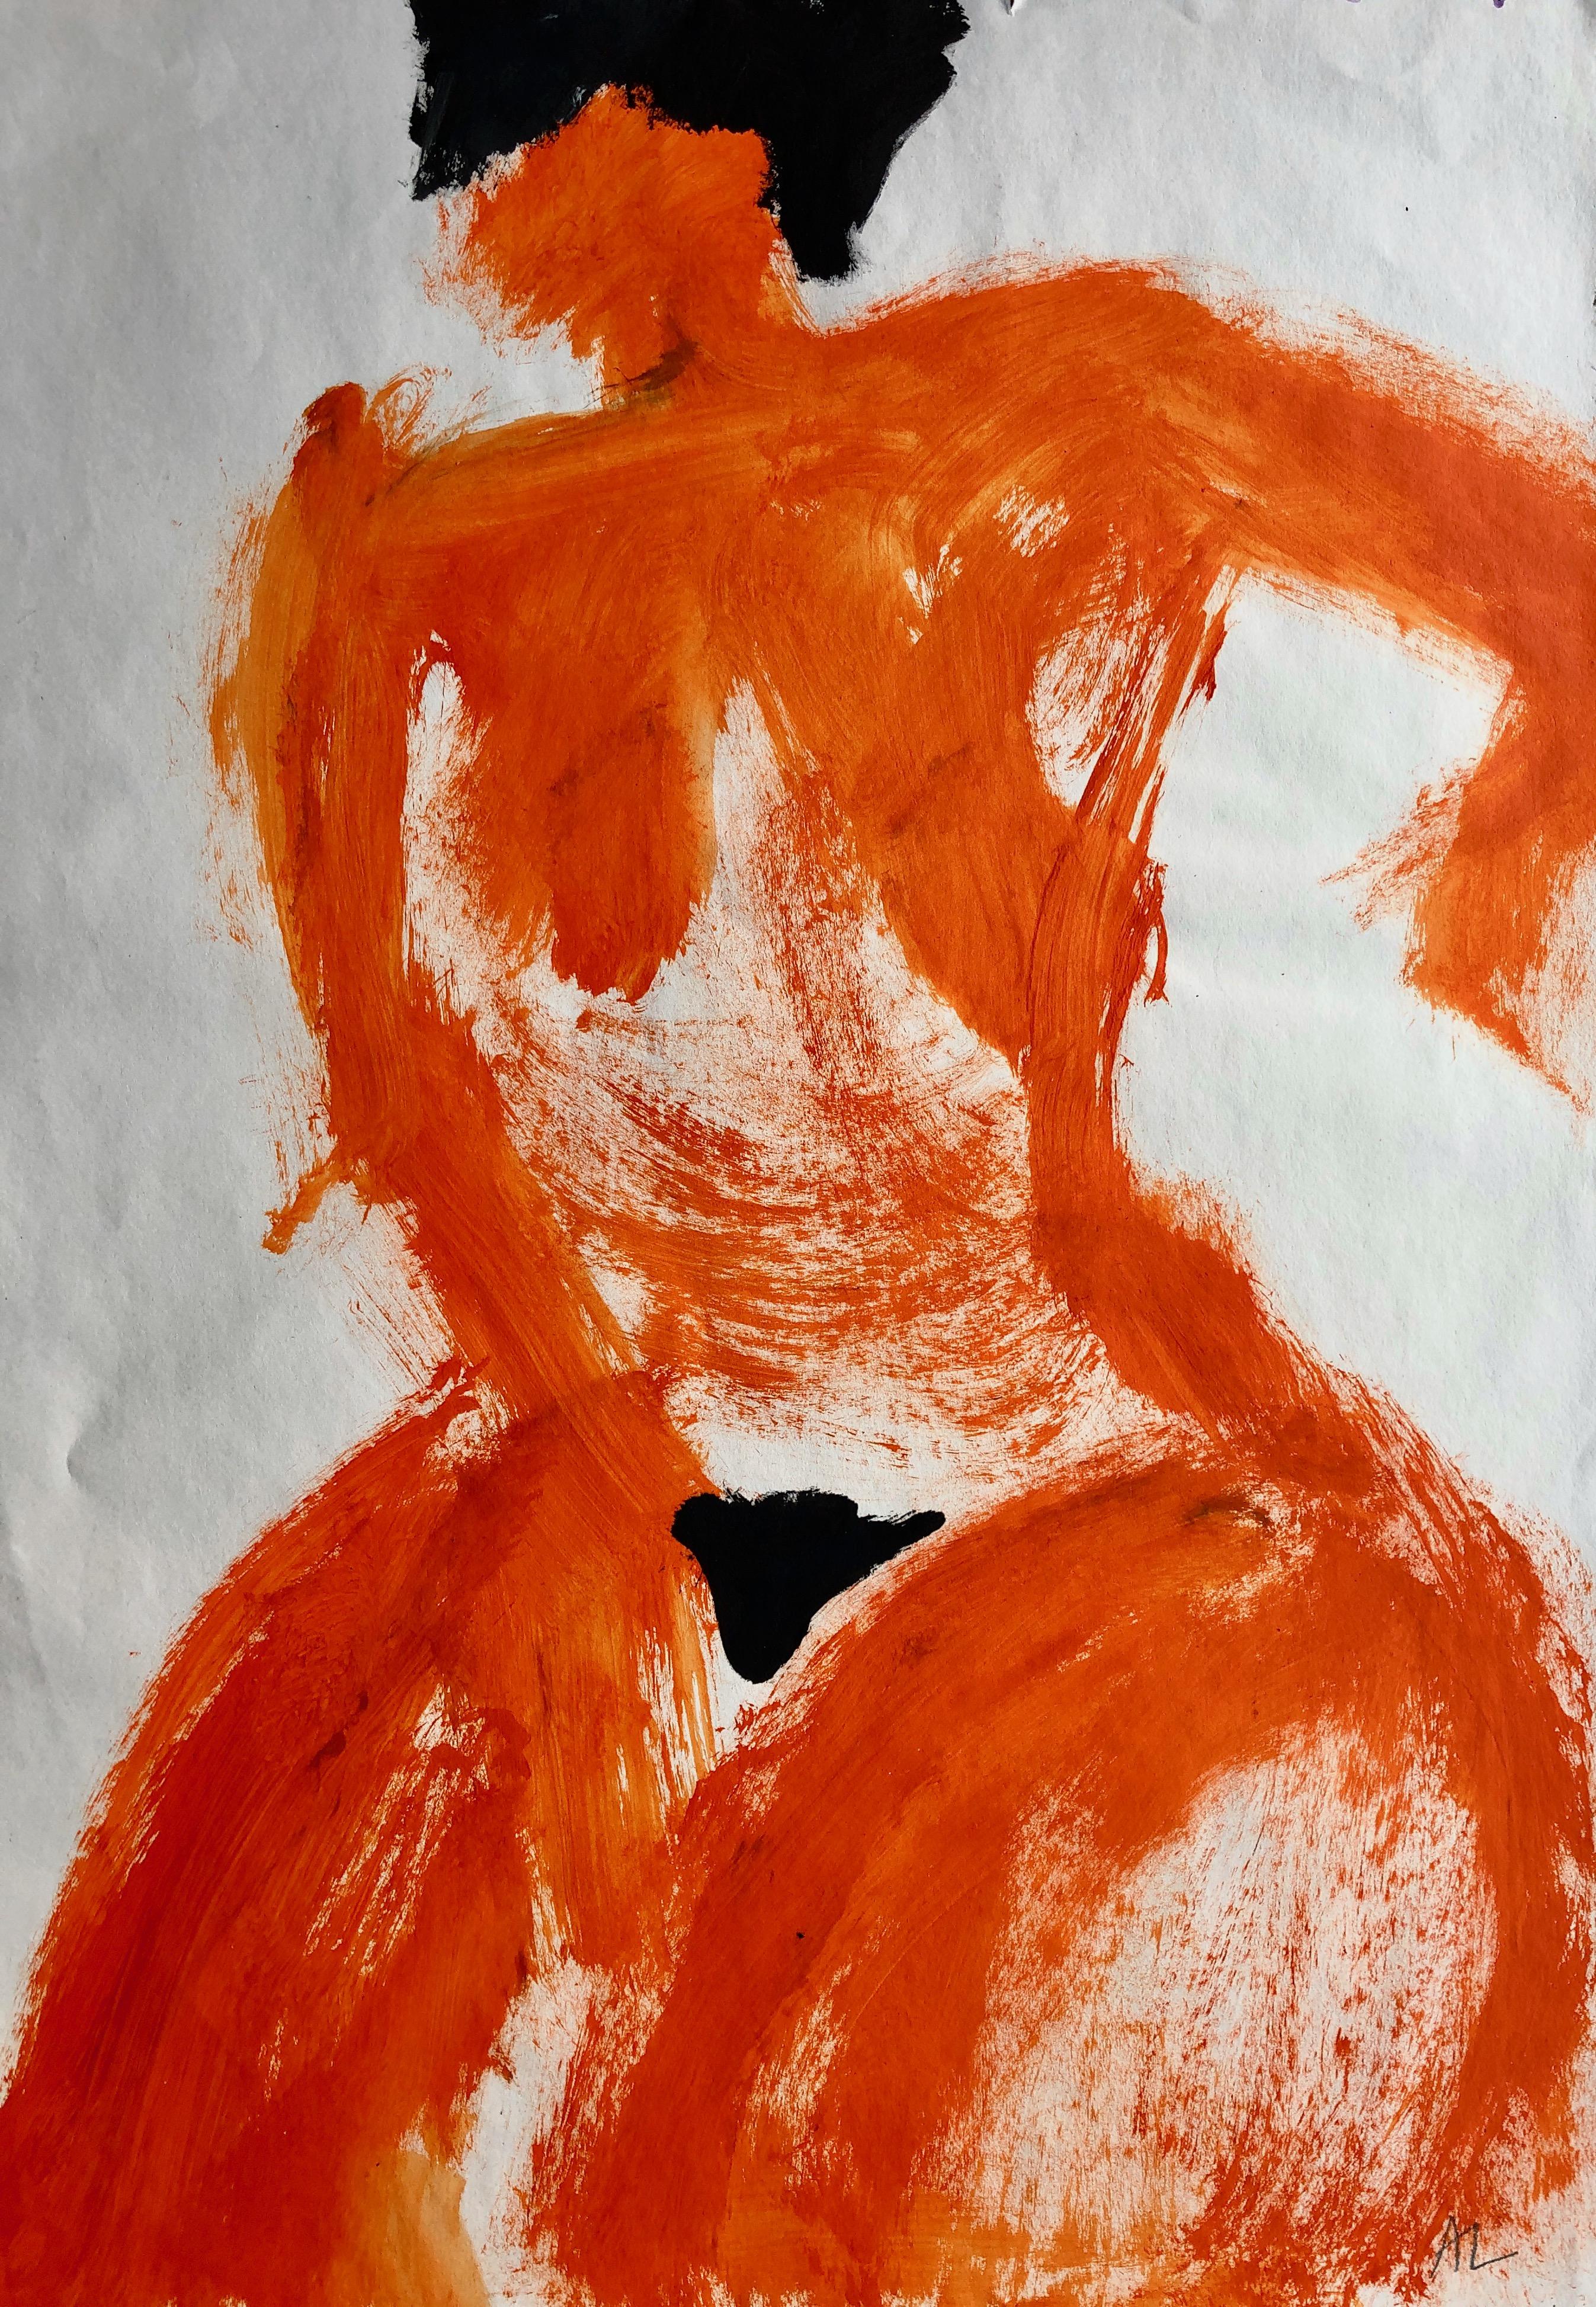 Nude Angela Lyle - La femme orange. Techniques mixtes contemporaines sur papier